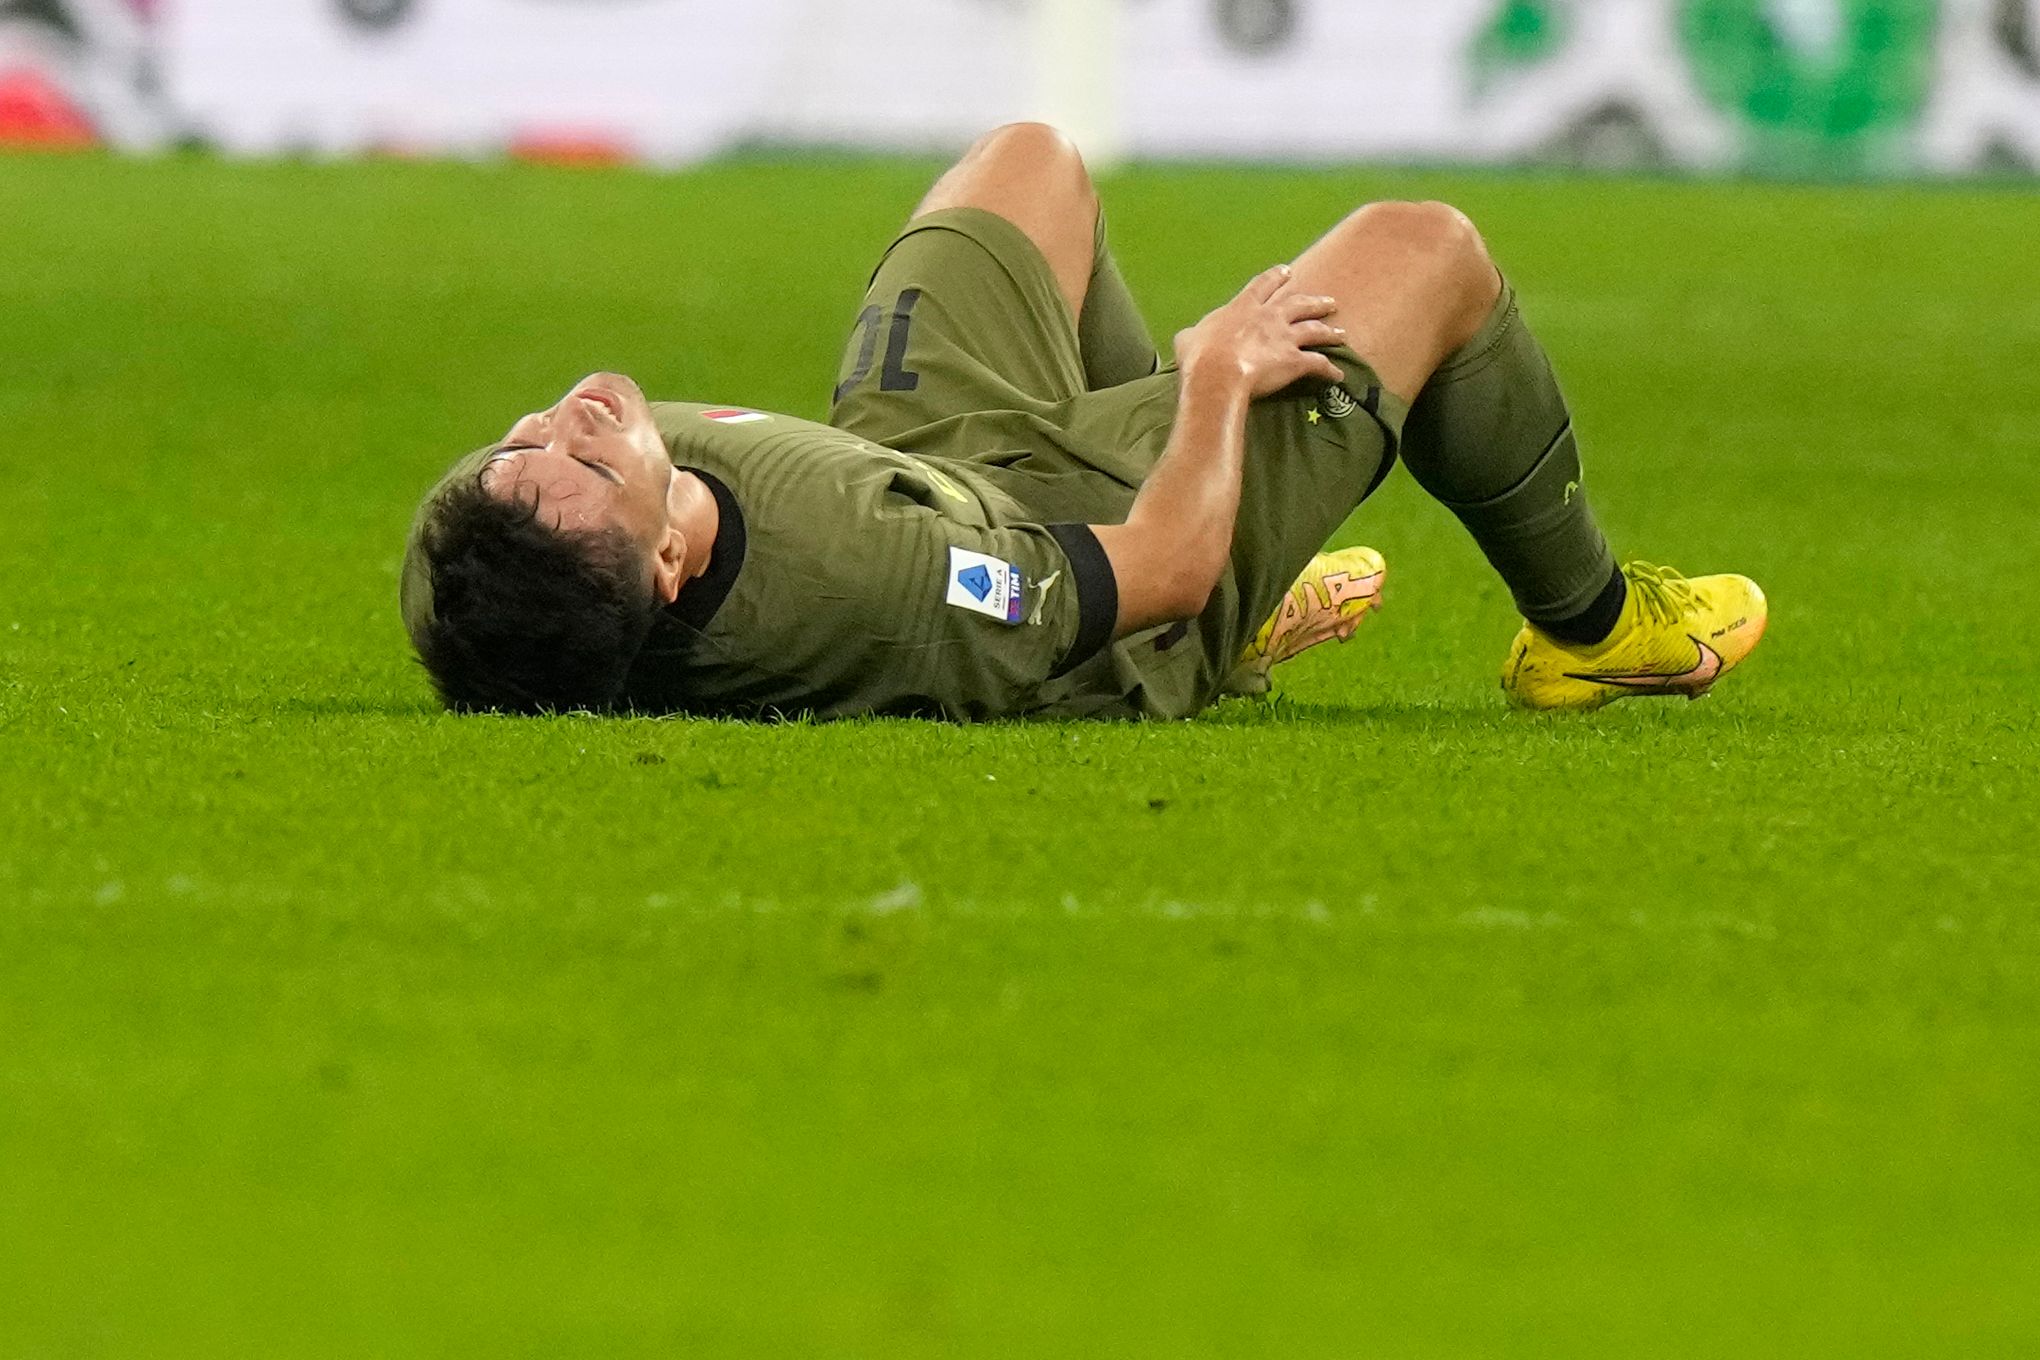 Inter lose Mkhitaryan to muscular injury - Football Italia